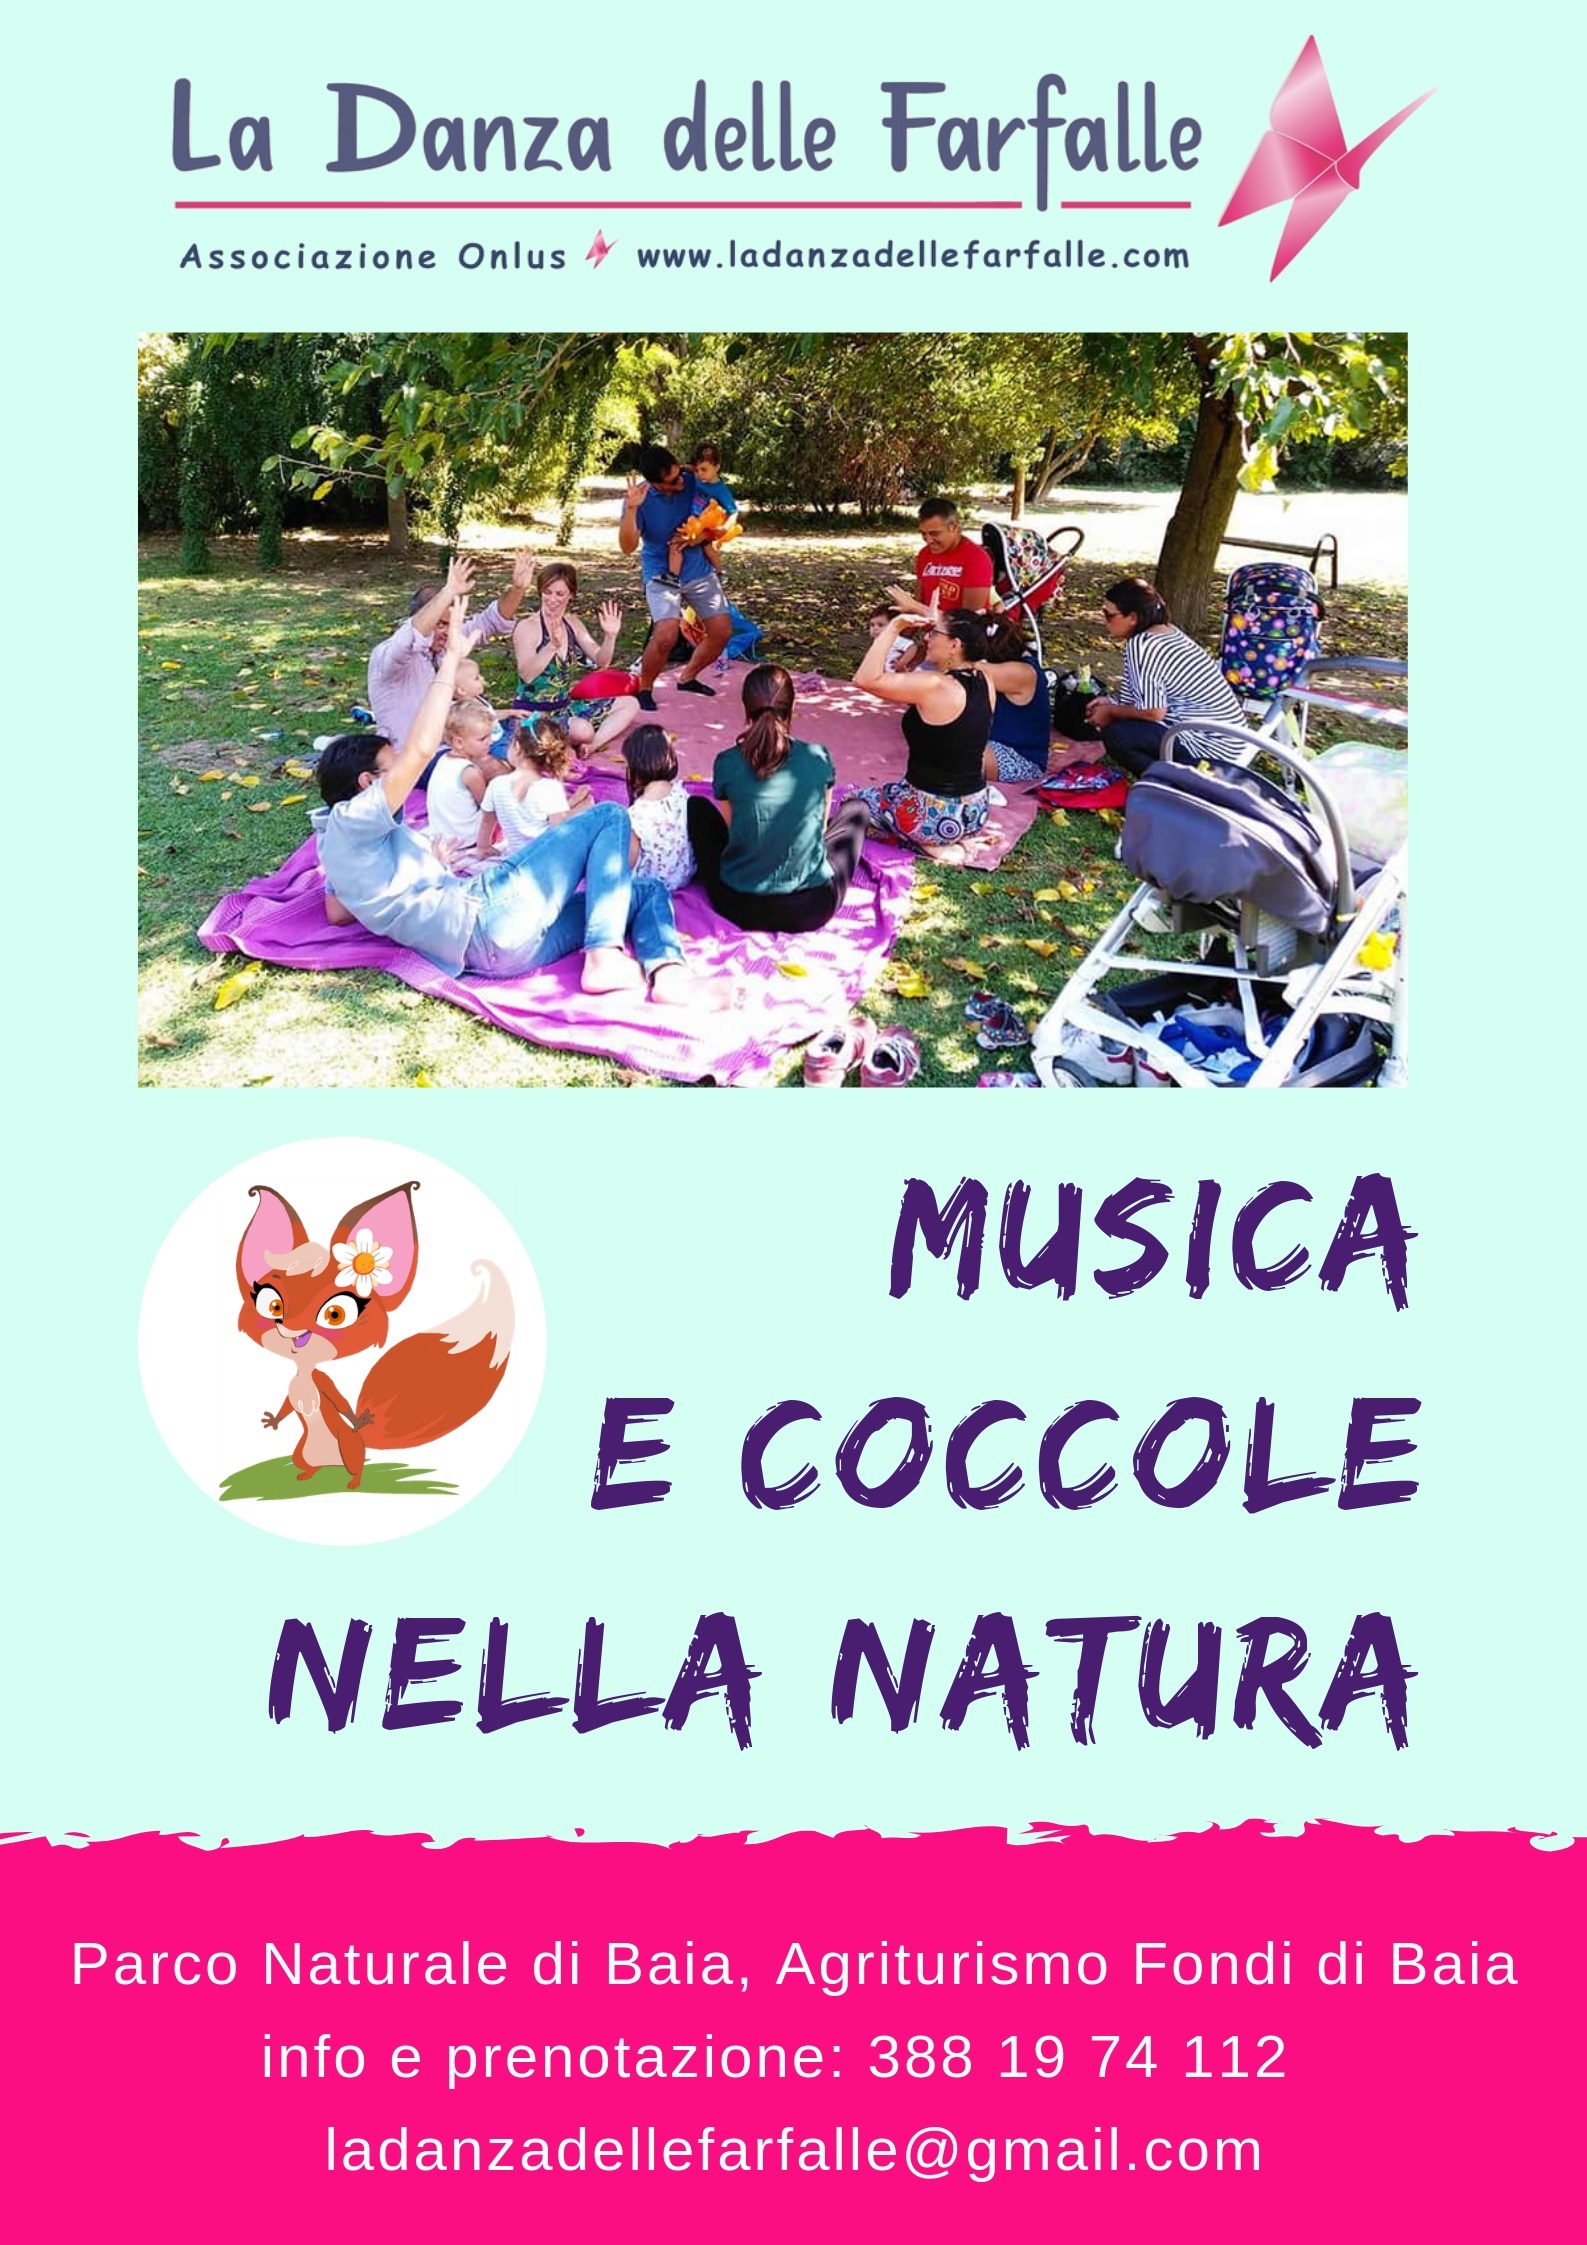 Evento Musica e Coccole nella Natura Rossella Rizzaro Ass La Danza delle Farfalle Onlus 22 Sett 2018 sito